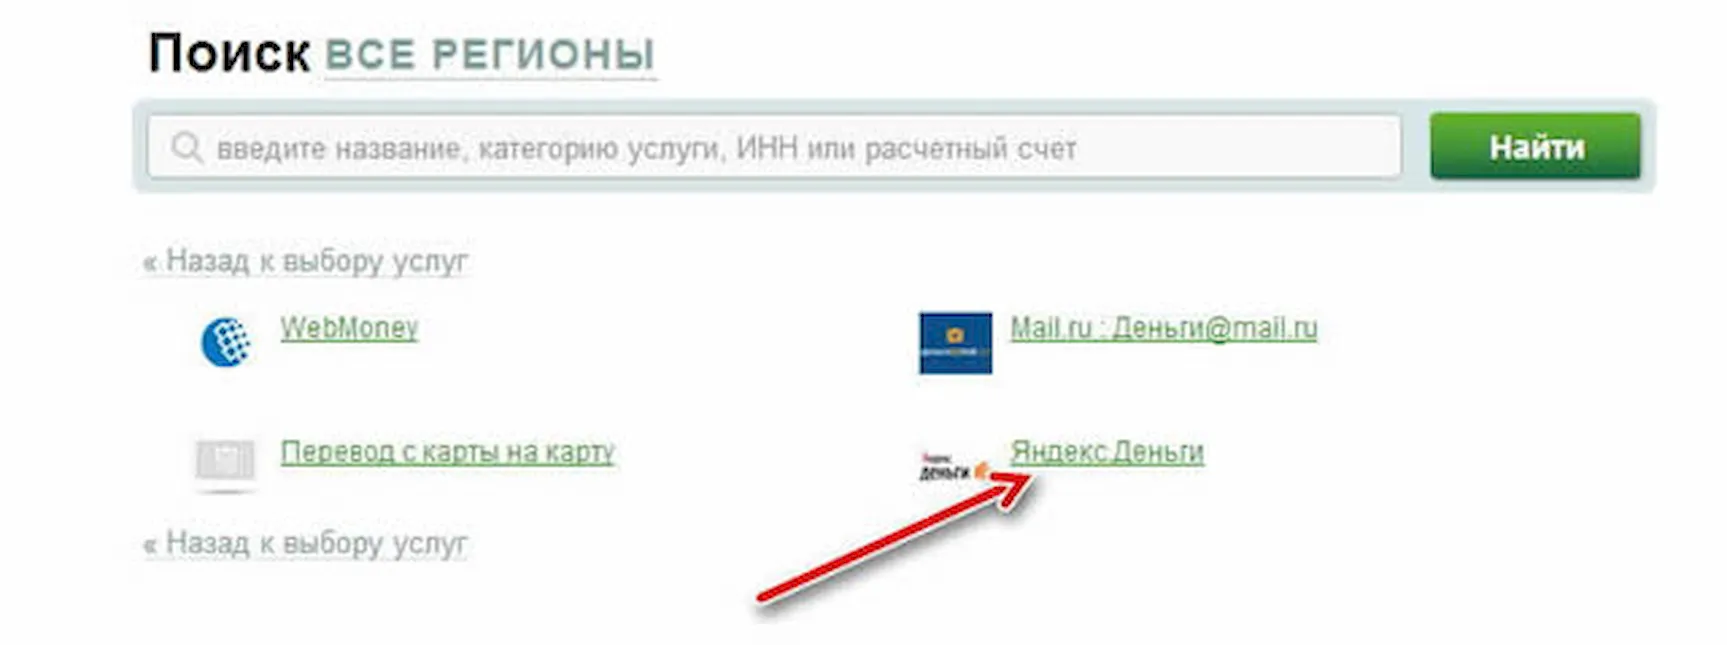 Яндекс.Деньги в списке создания шаблона для Мобильного банка